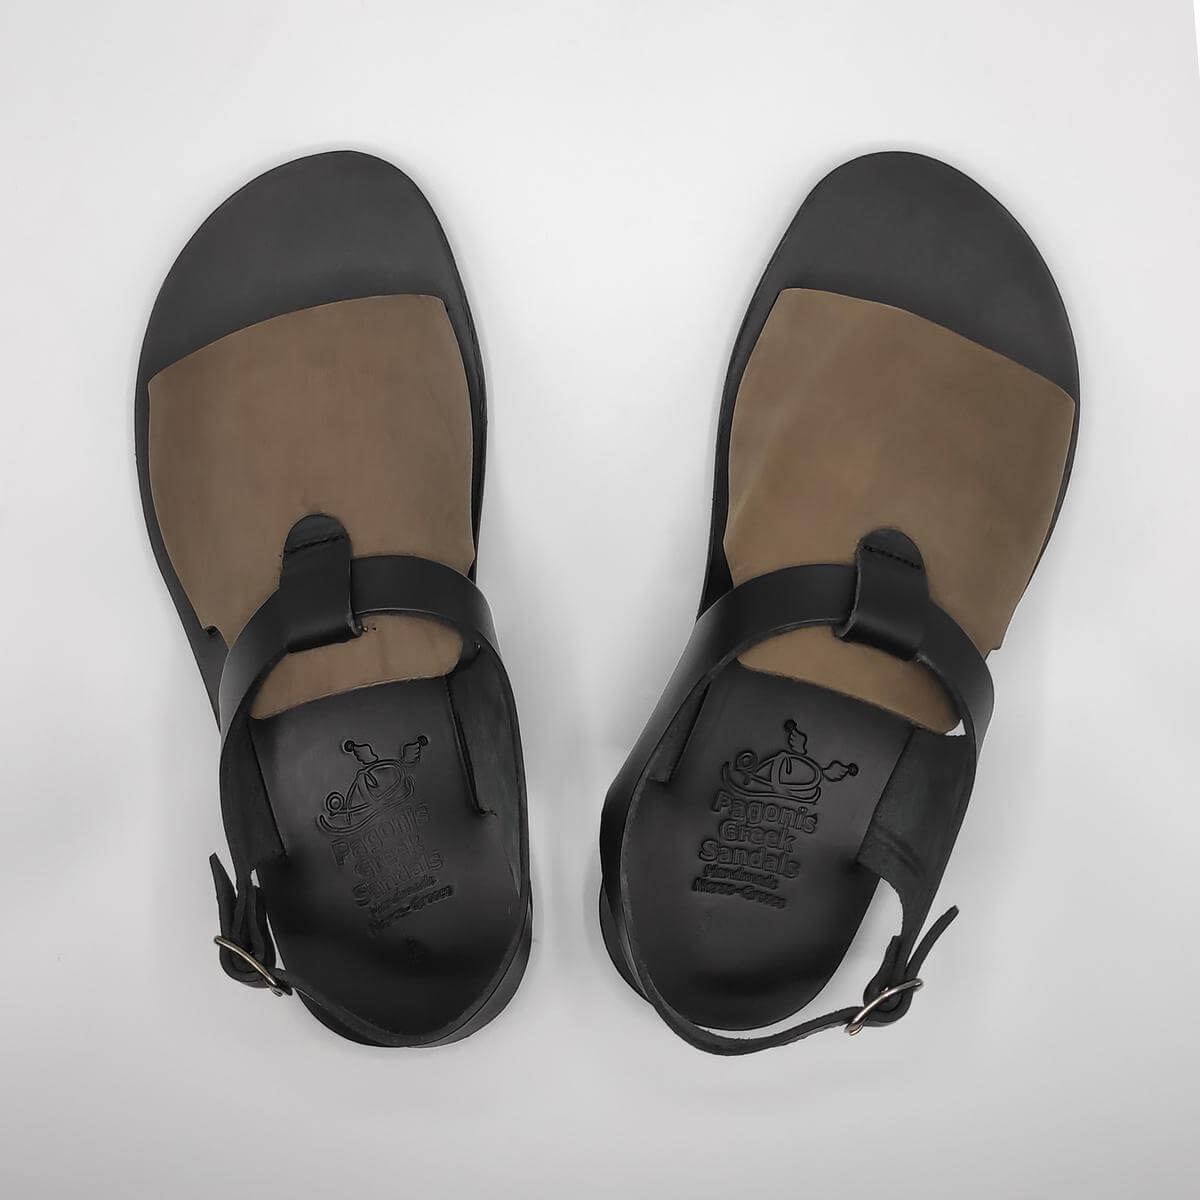 men's leather sandals open toe